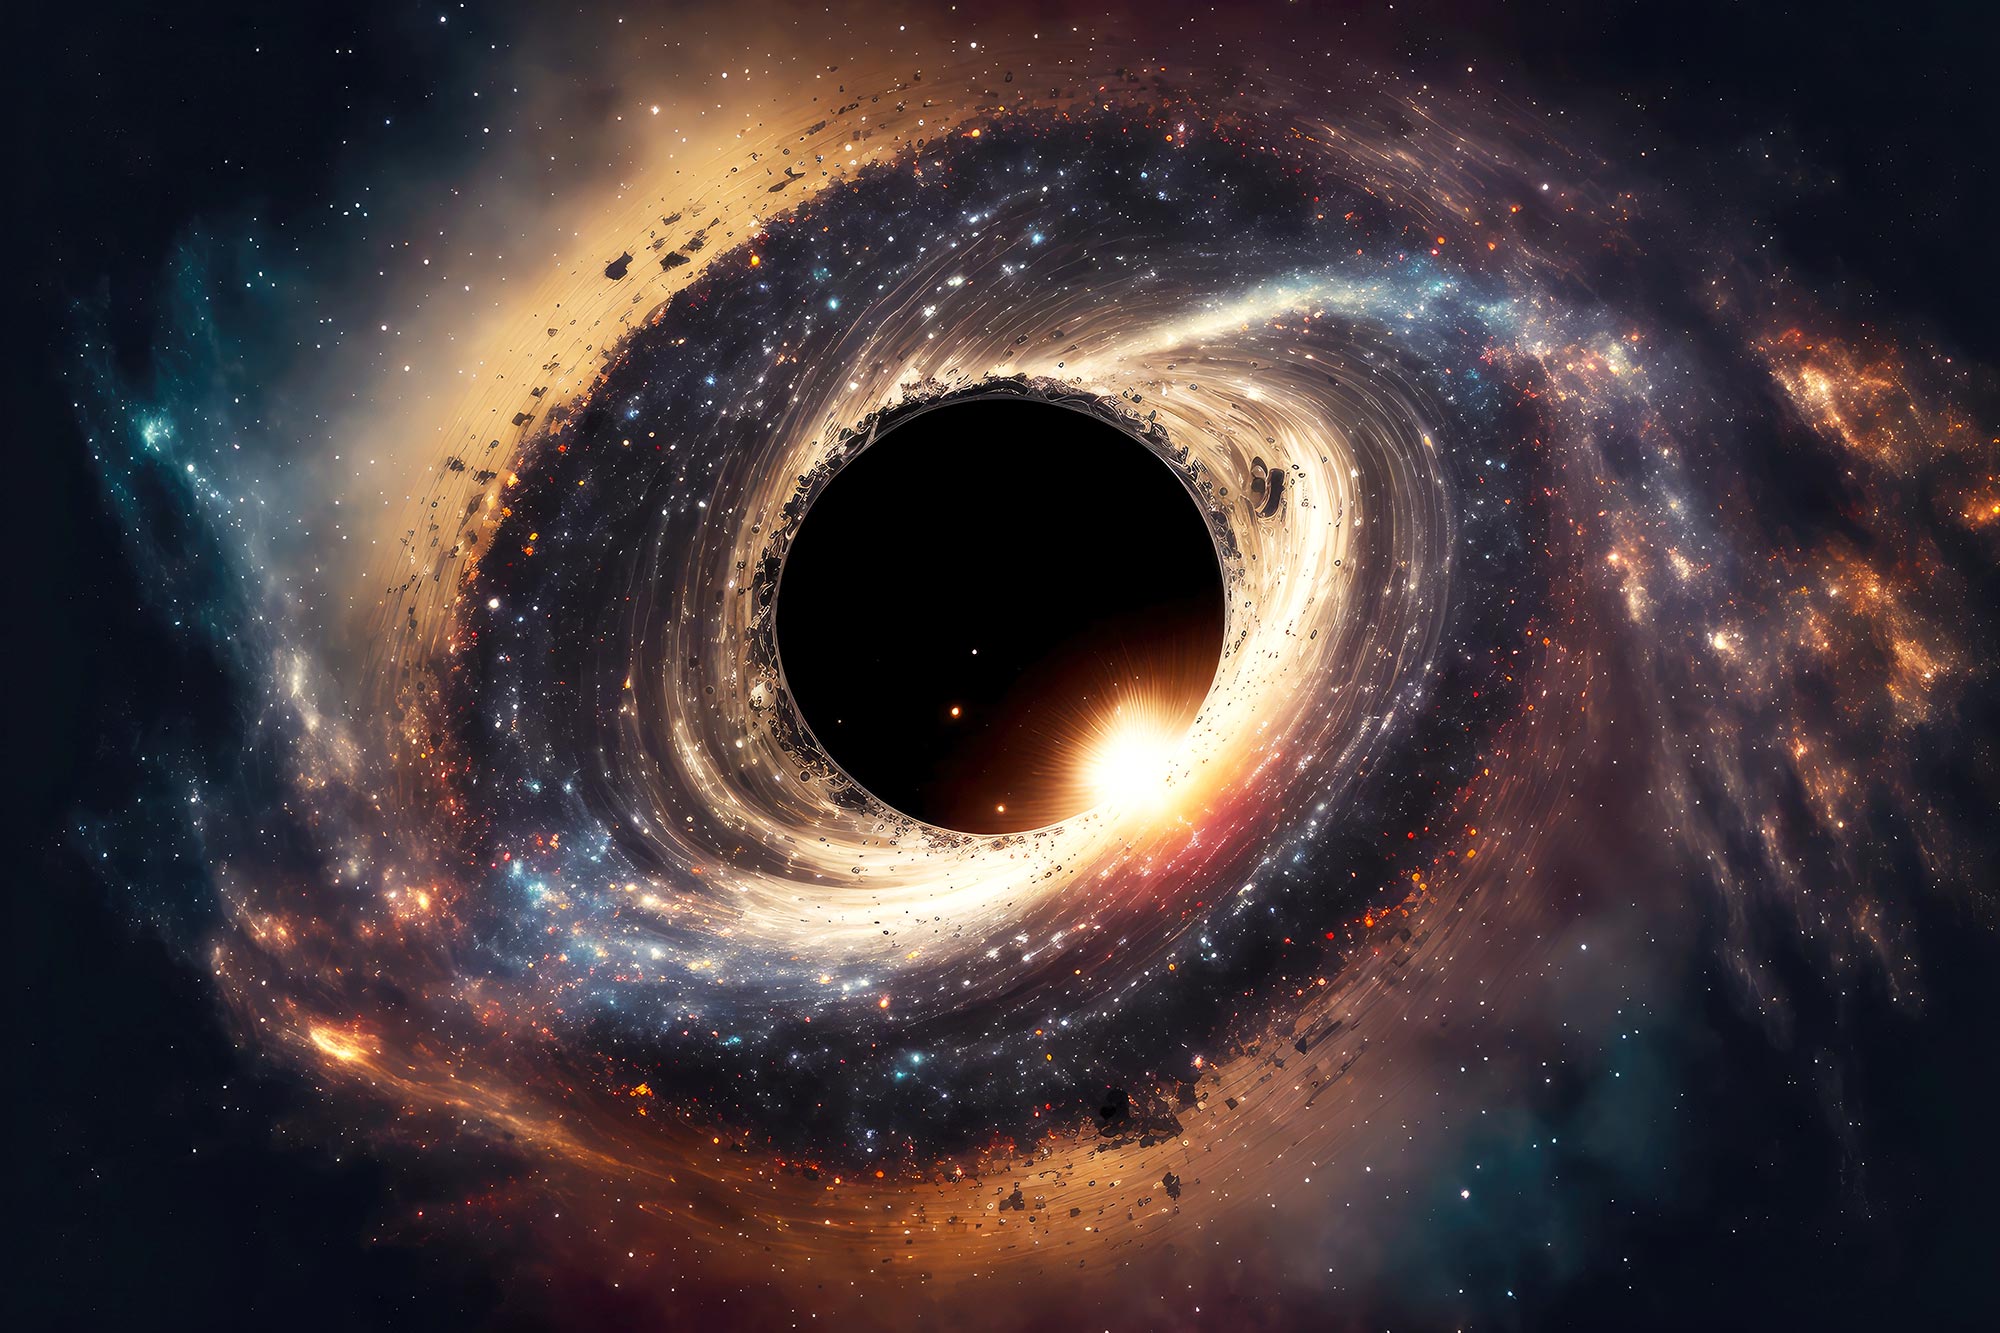 اكتشف علماء الفلك الثقب الأسود أقرب إلى الأرض من أي وقت مضى